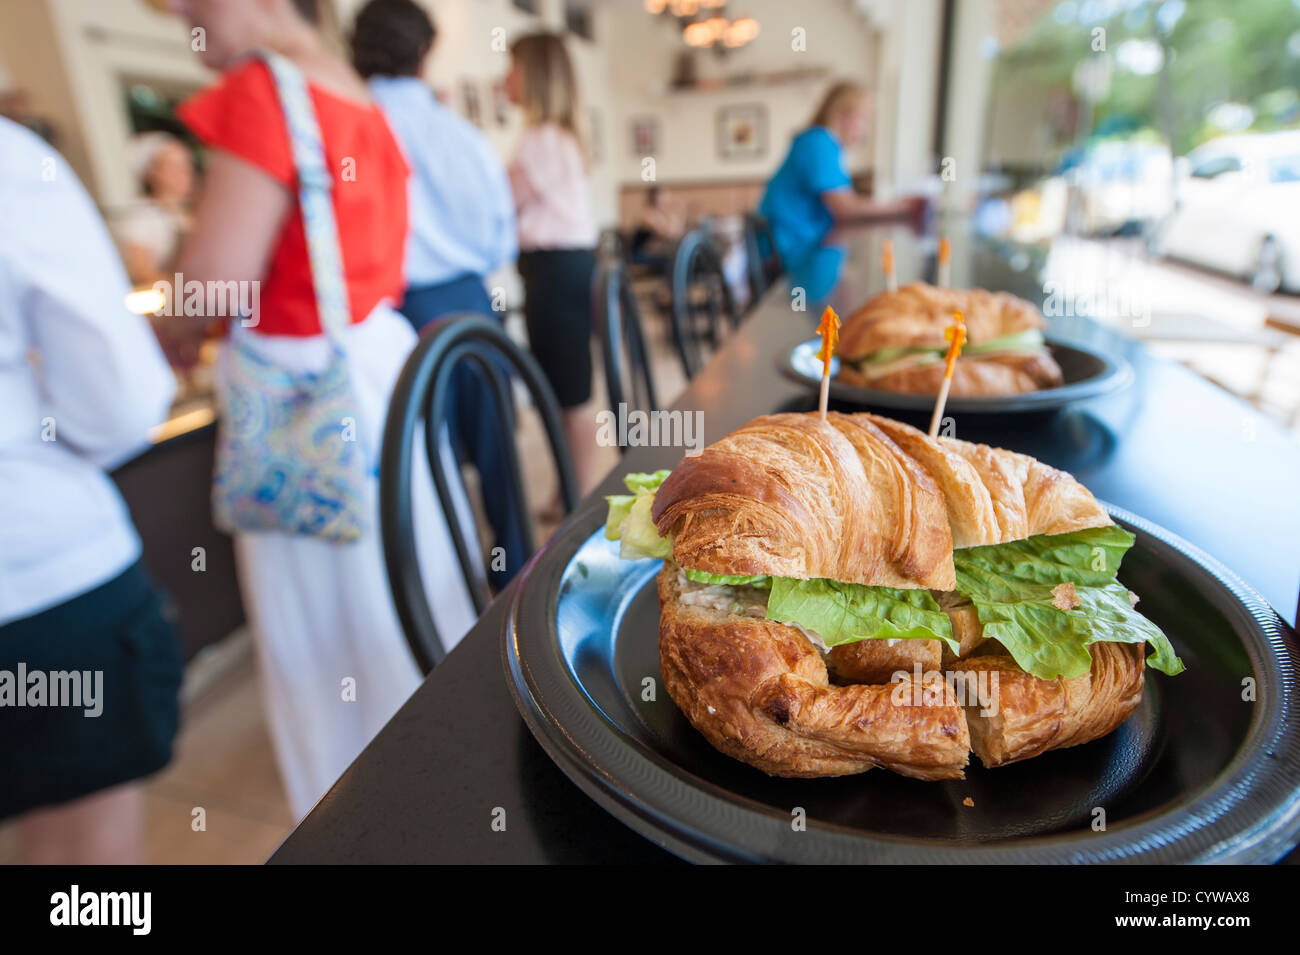 USA, Floride. Des sandwichs au Croissant Croissant café-pâtisserie gastronomique le centre-ville de Winter Park, Floride. Banque D'Images